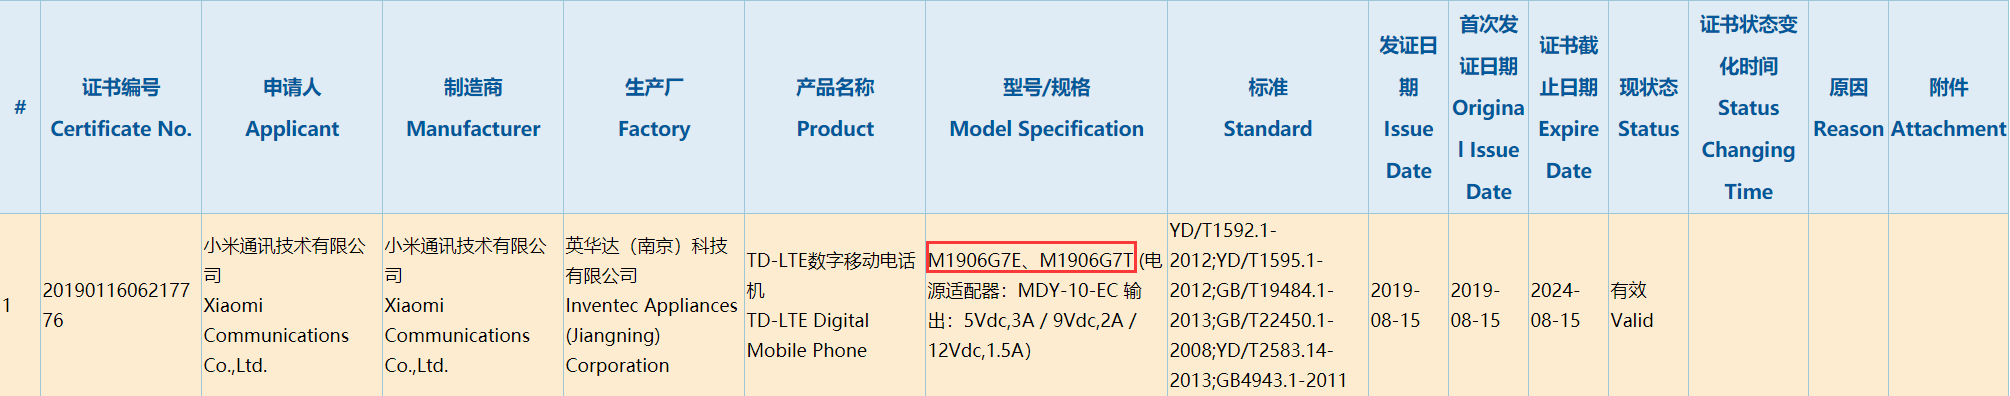 小米新机获认证 无意外应该是红米Note8